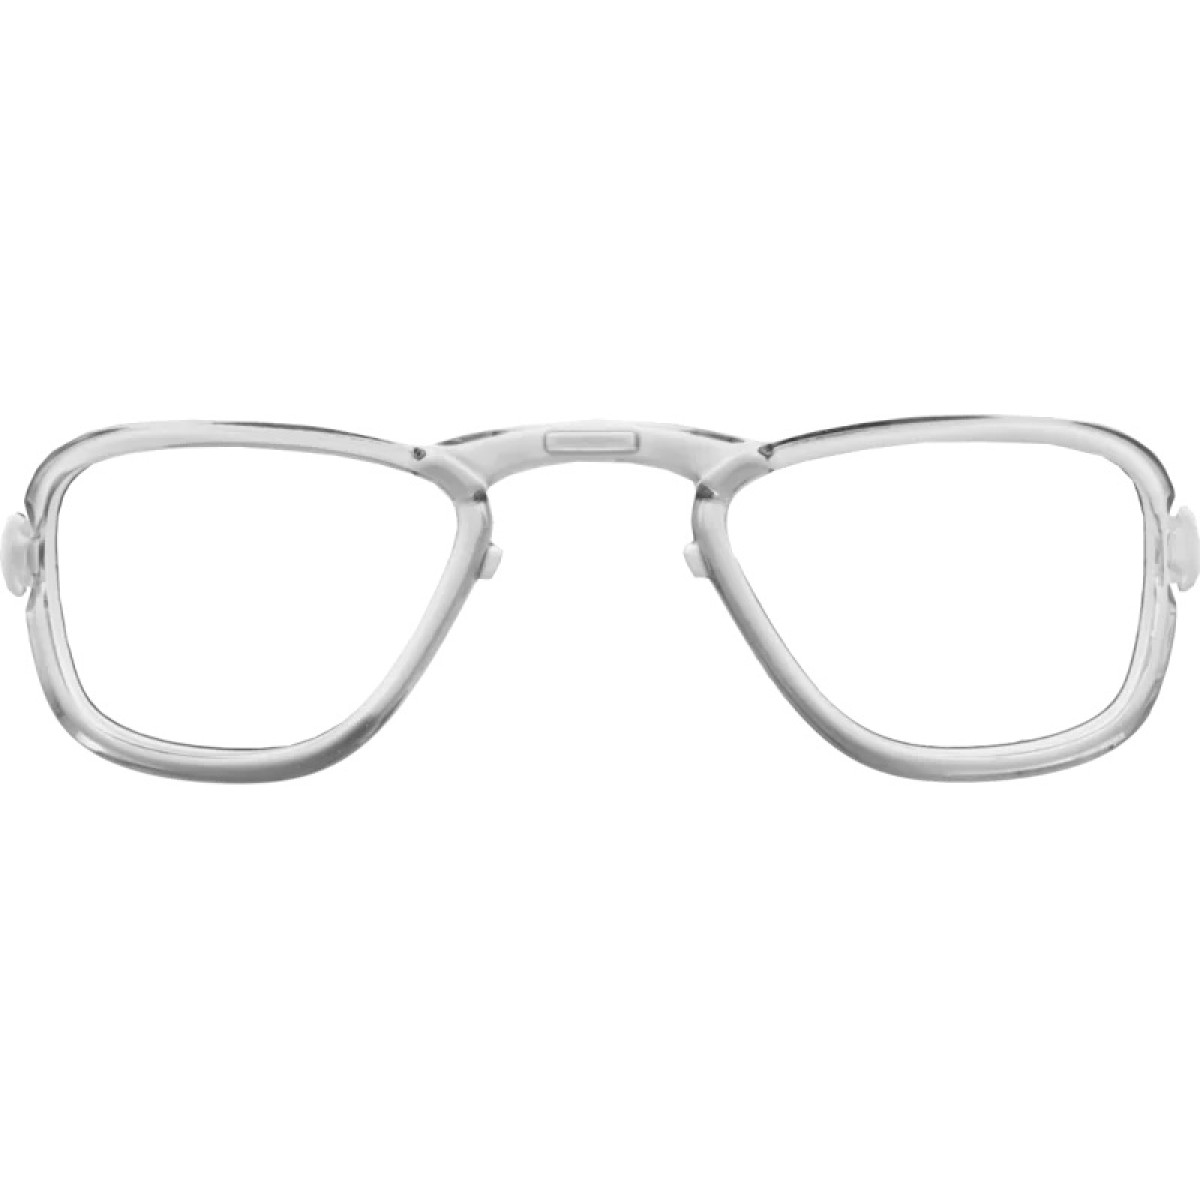 Optic polarized sunglasses E558-1PR GOGGLE - view 2